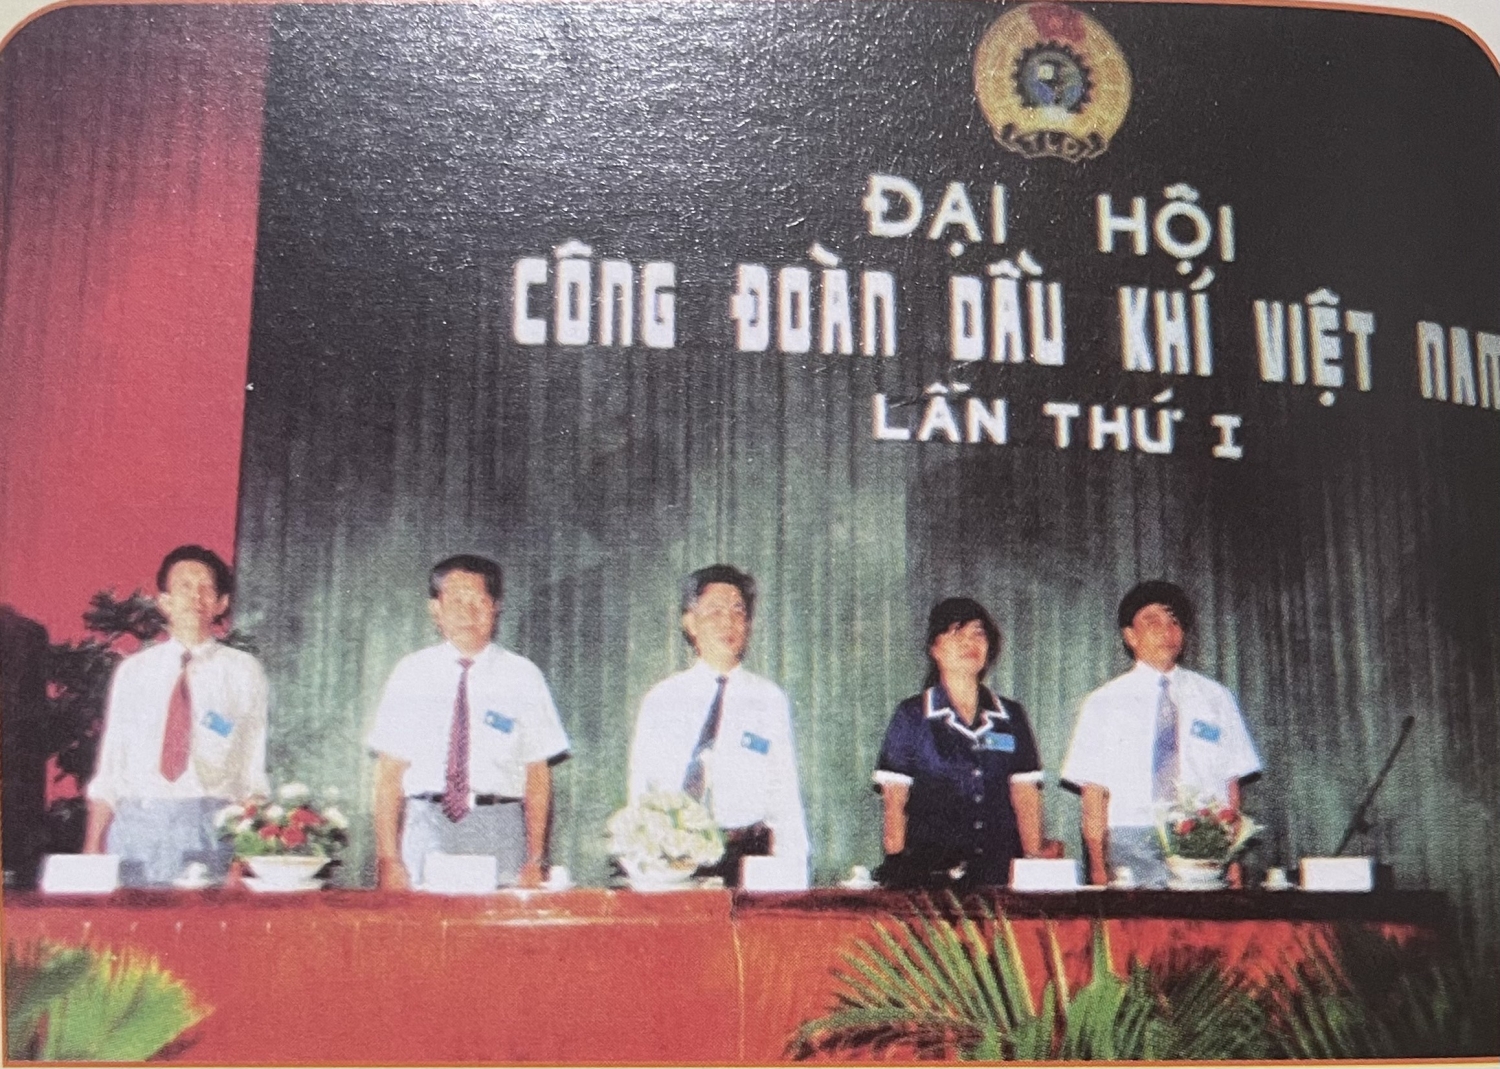 Vai trò của Công đoàn Dầu khí Việt Nam trong thời kỳ đổi mới